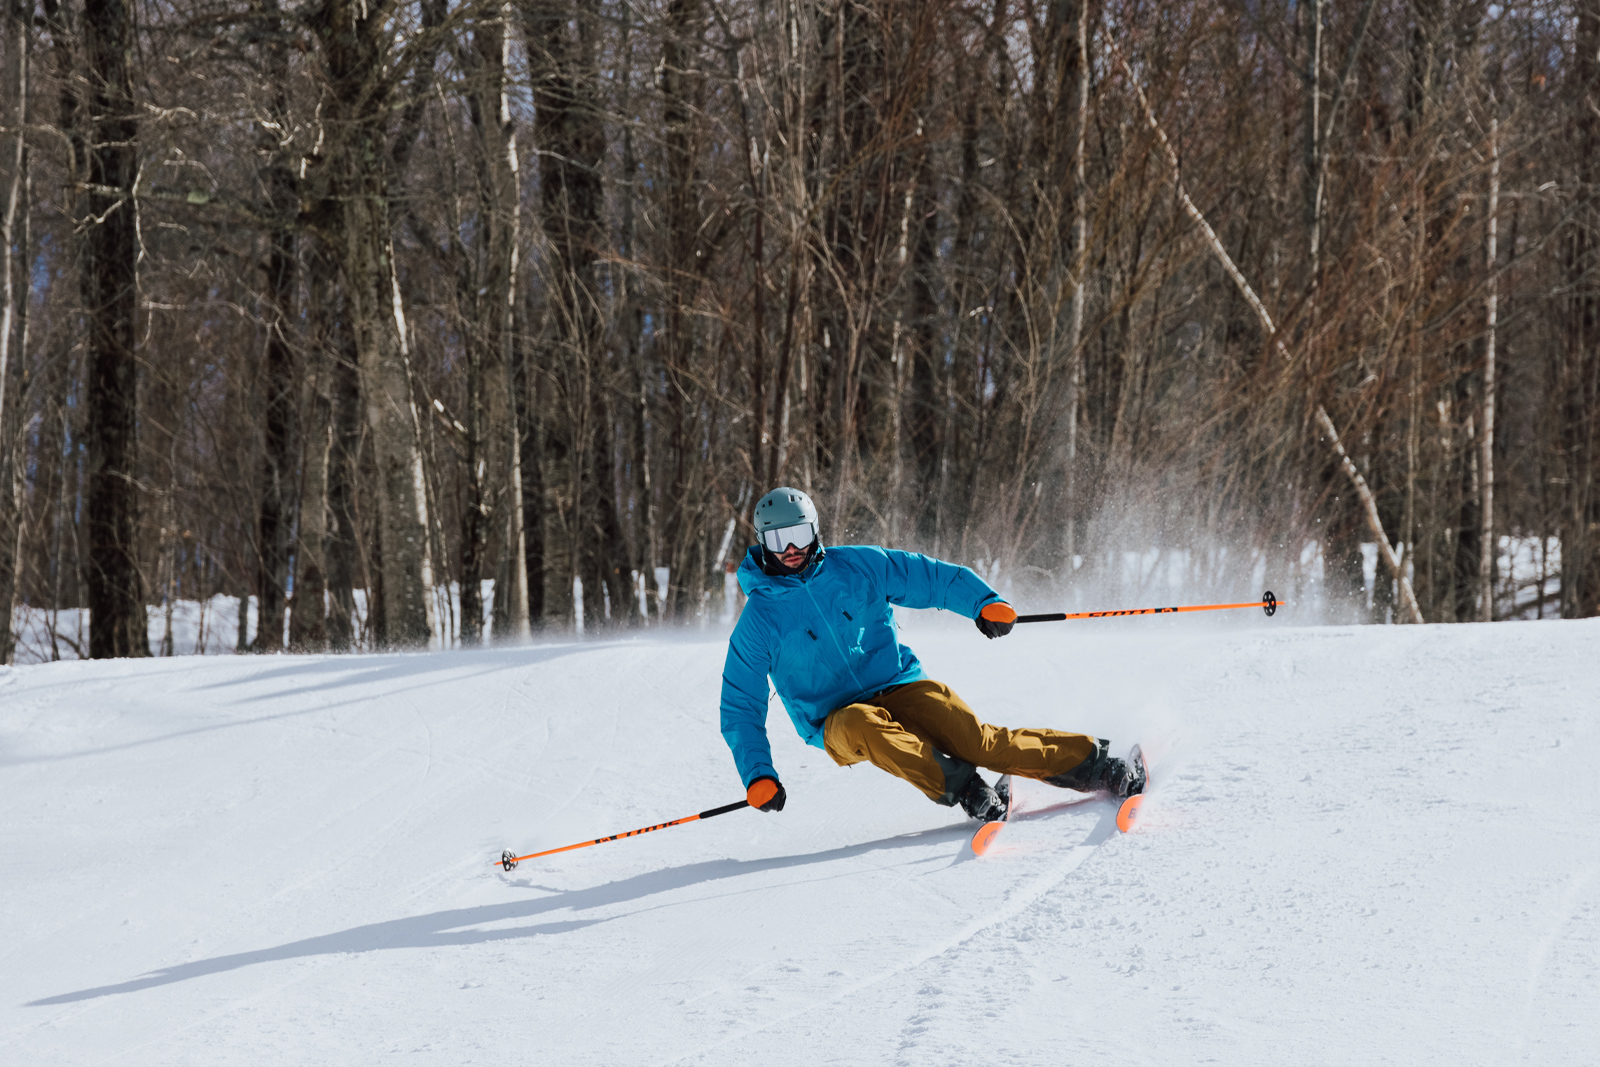 Blizzard Bonafide 97 Ski Test Advanced Skier